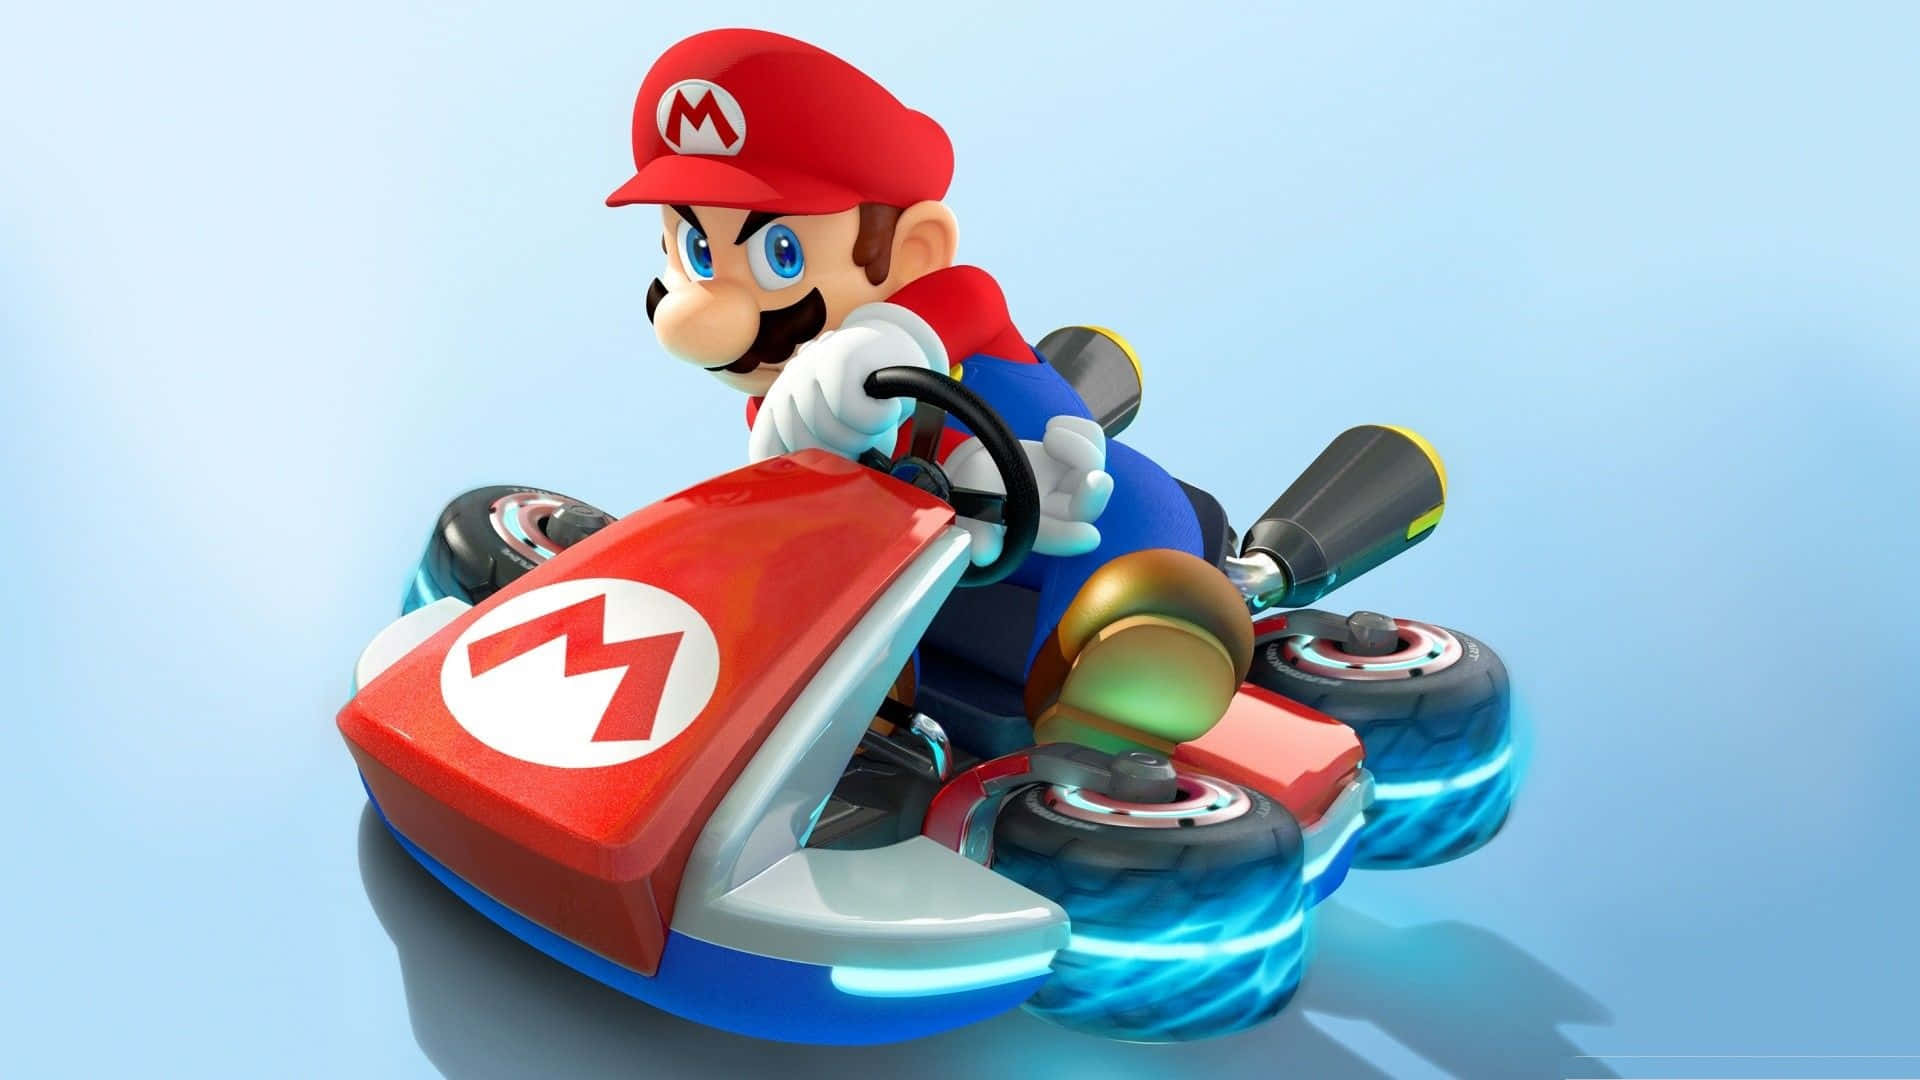 Mario Kart 8 Deluxe Race Action Wallpaper